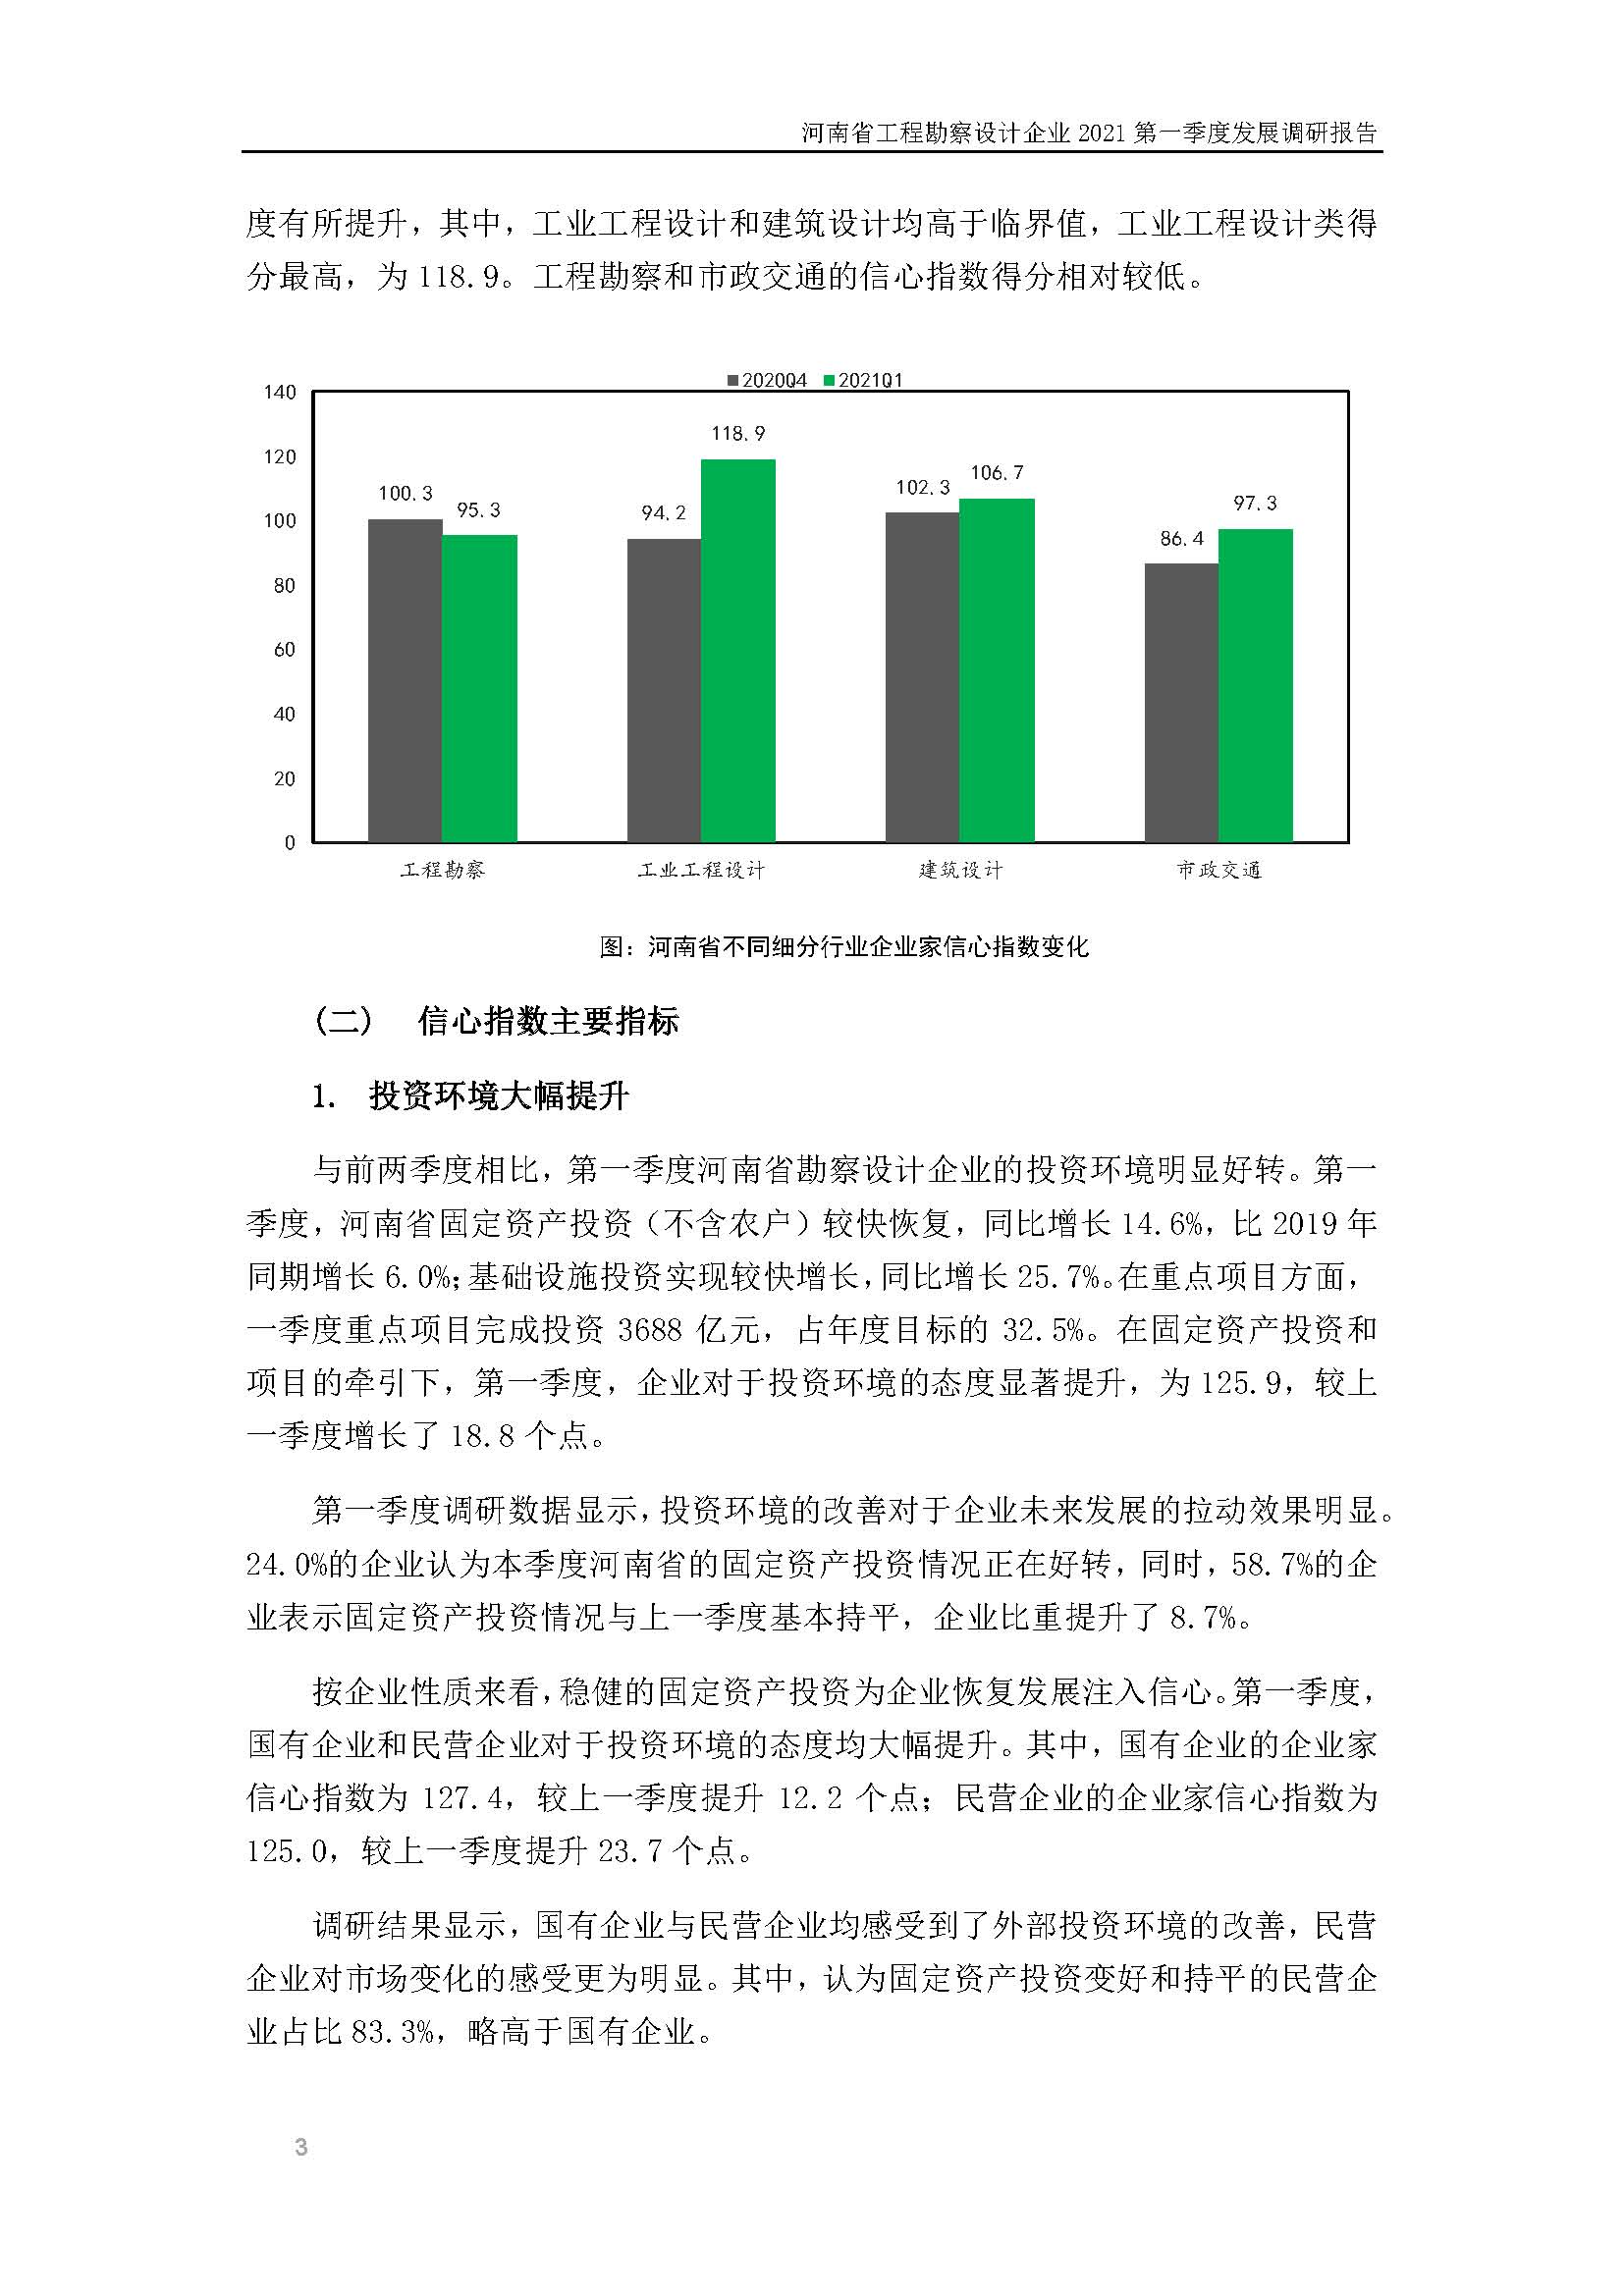 河南省工程勘察设计企业2021第一季度发展调研报告二_页面_4.jpg